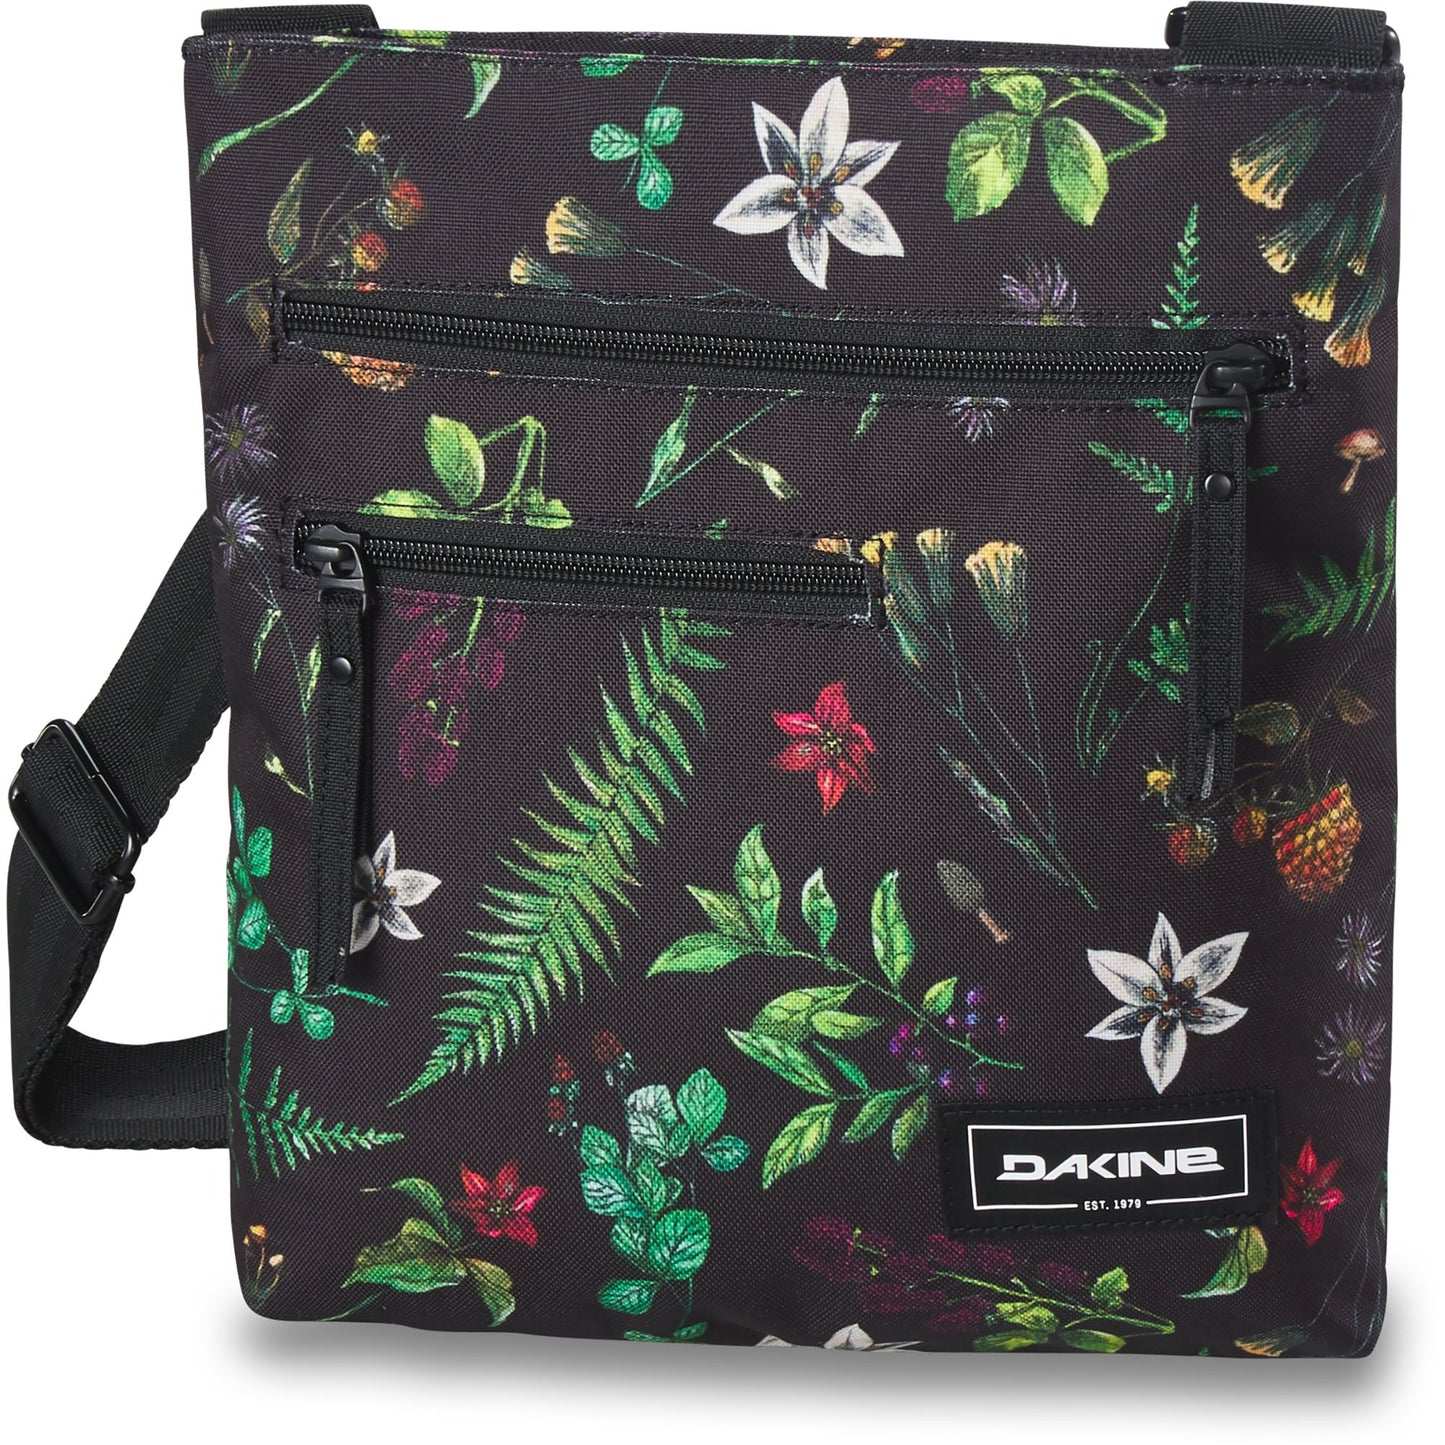 Dakine Jo Jo Bag Woodland Floral OS Bags & Packs